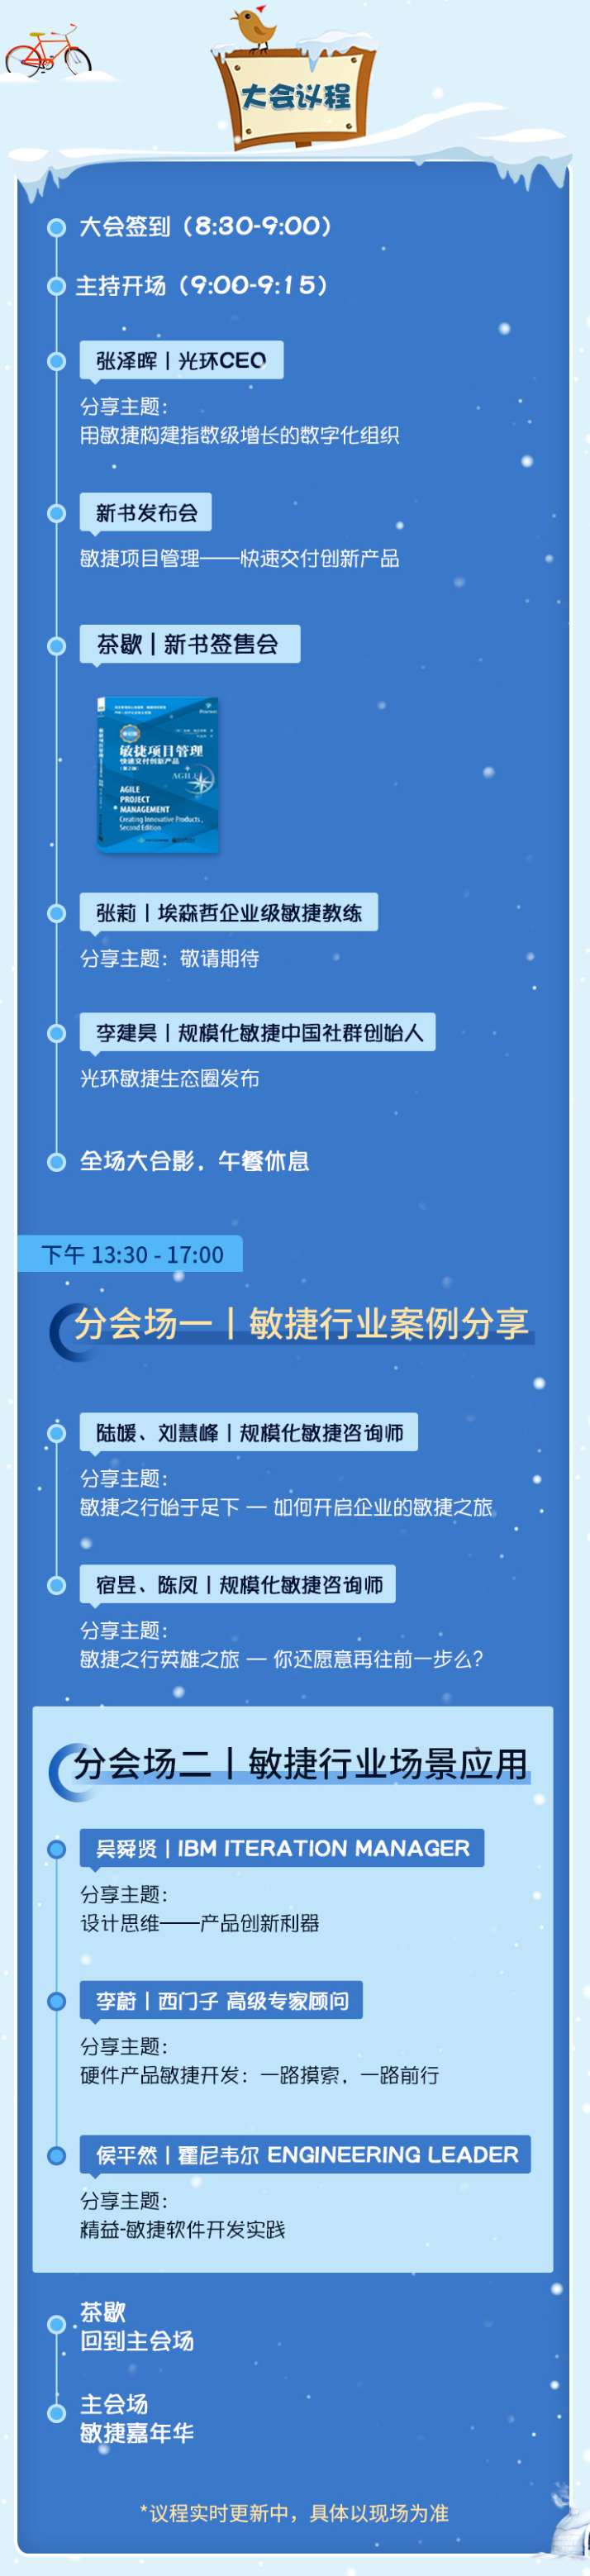 敏捷嘉年华·暨规模化敏捷冬季峰会2019（北京）